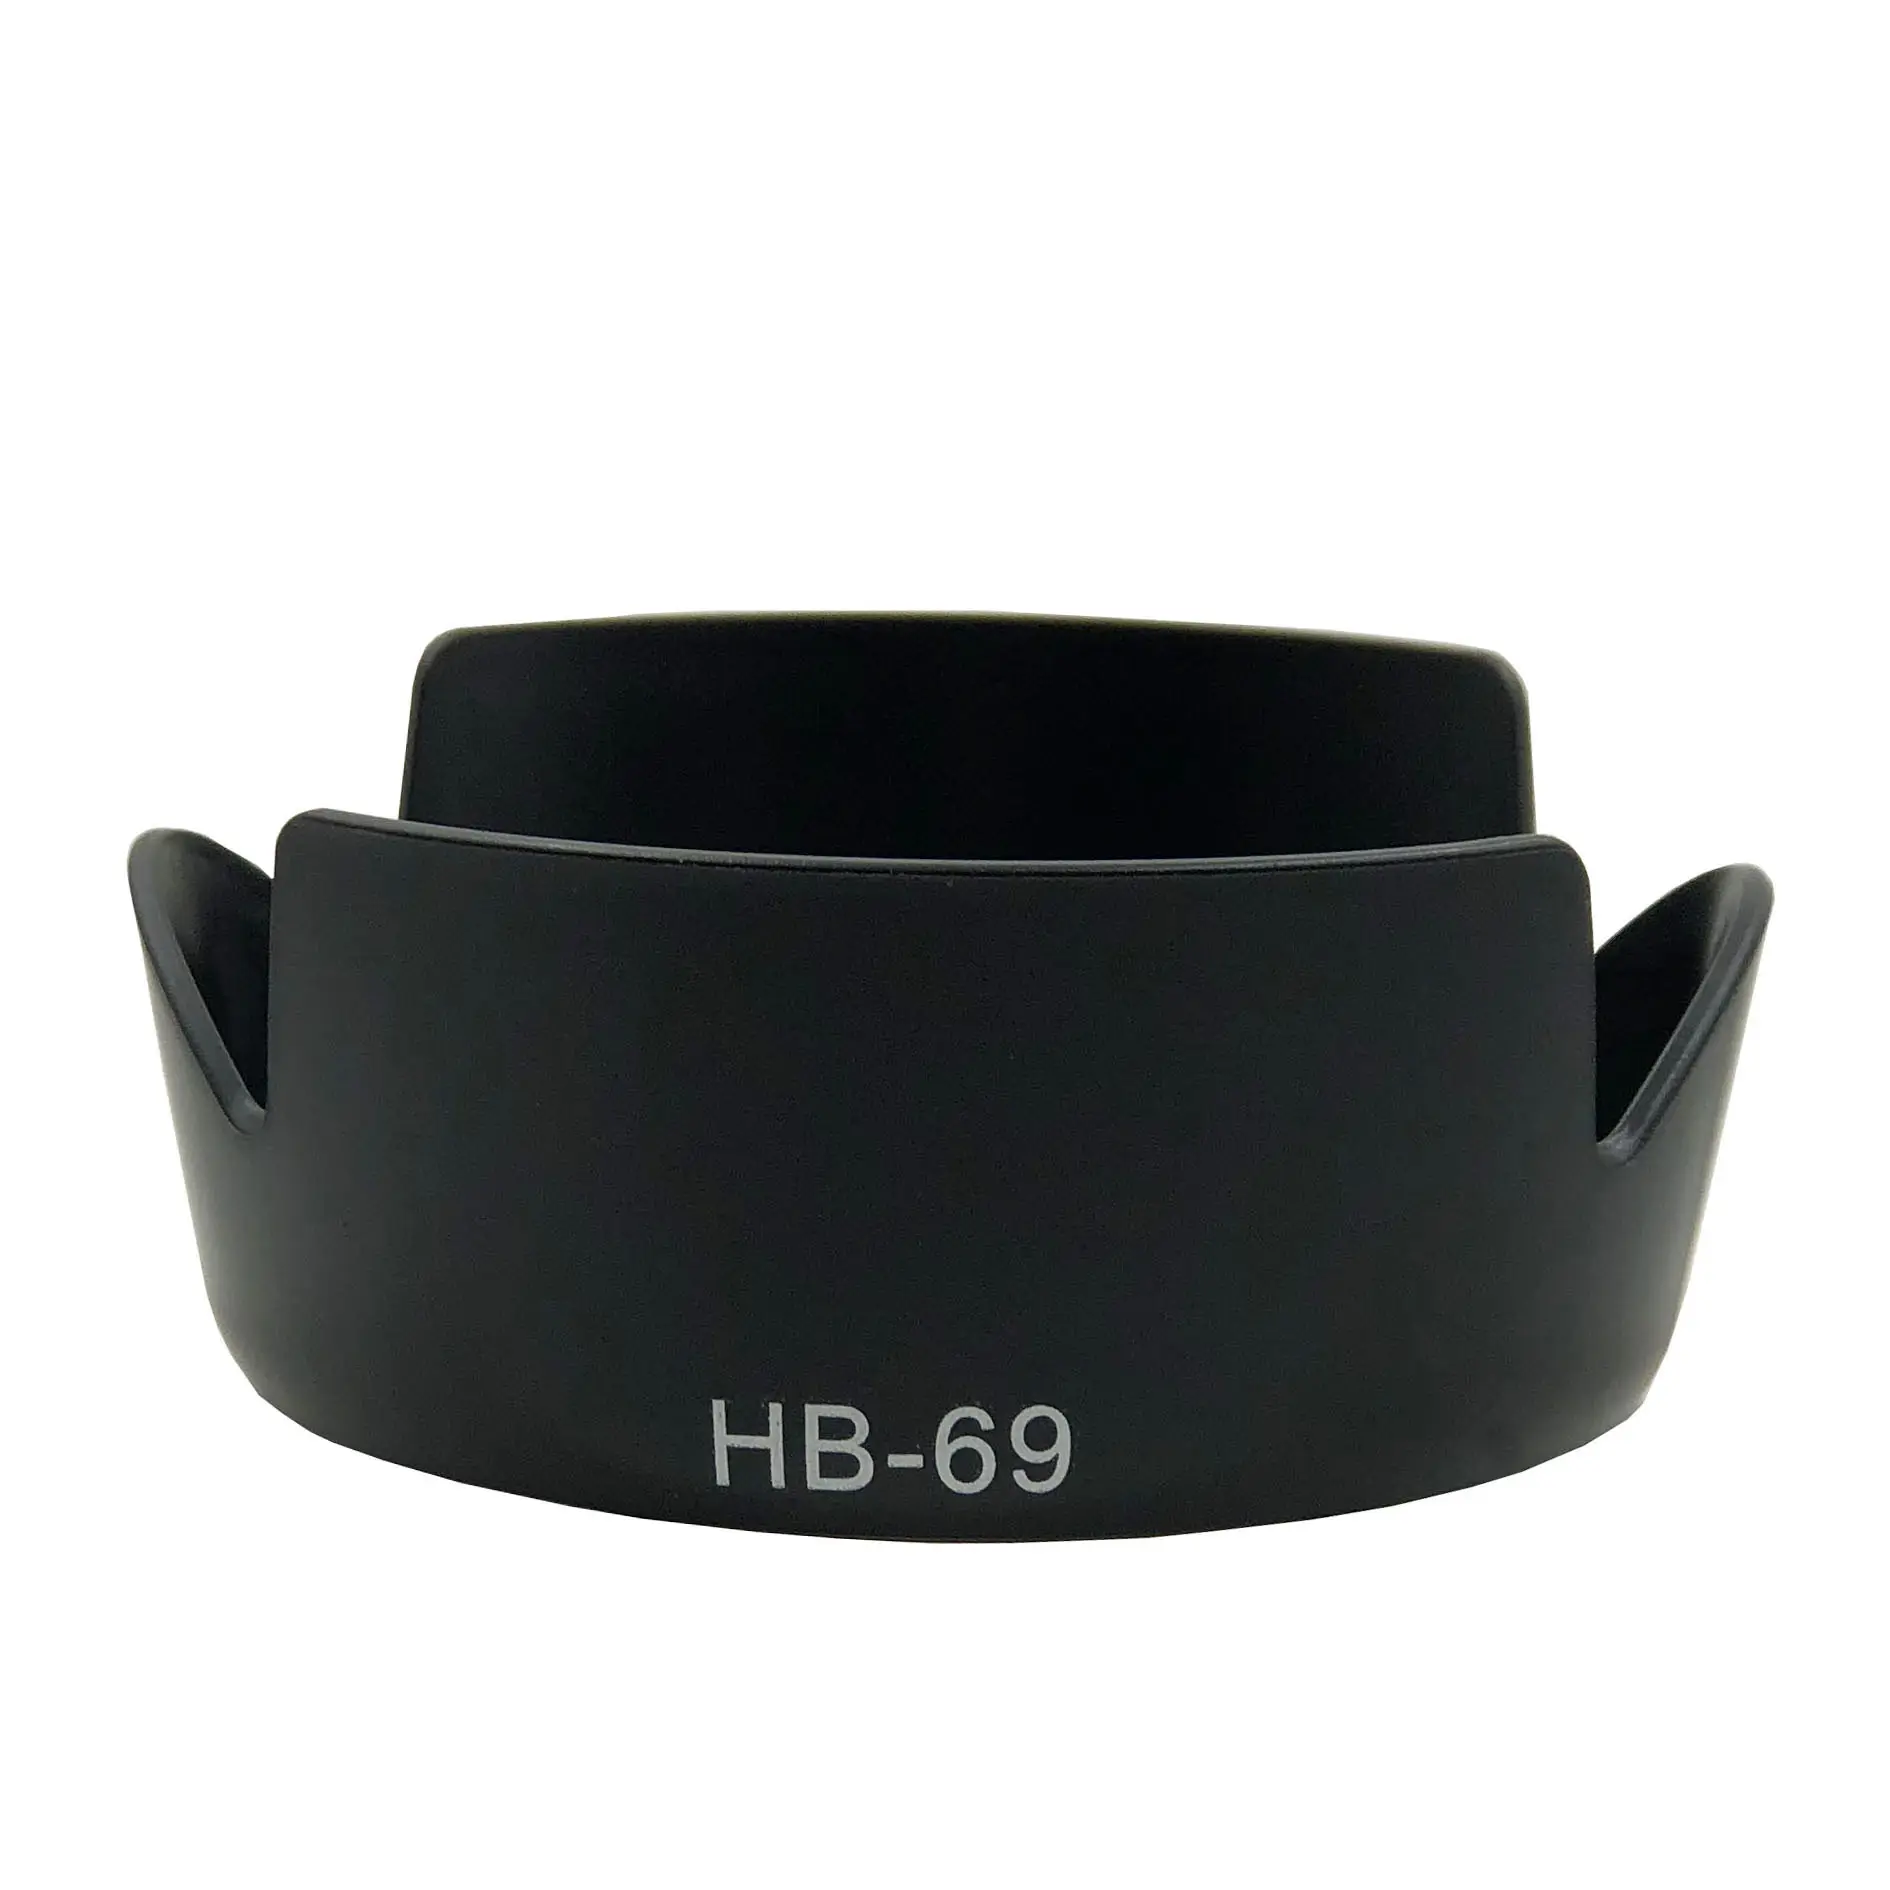 HB-69 HB 69 ABT hb69 ống kính mui xe đảo ngược máy ảnh lente Phụ kiện cho Nikon D3200 D3300 D5200 D5300 18-55mm II AF-S18-55VR